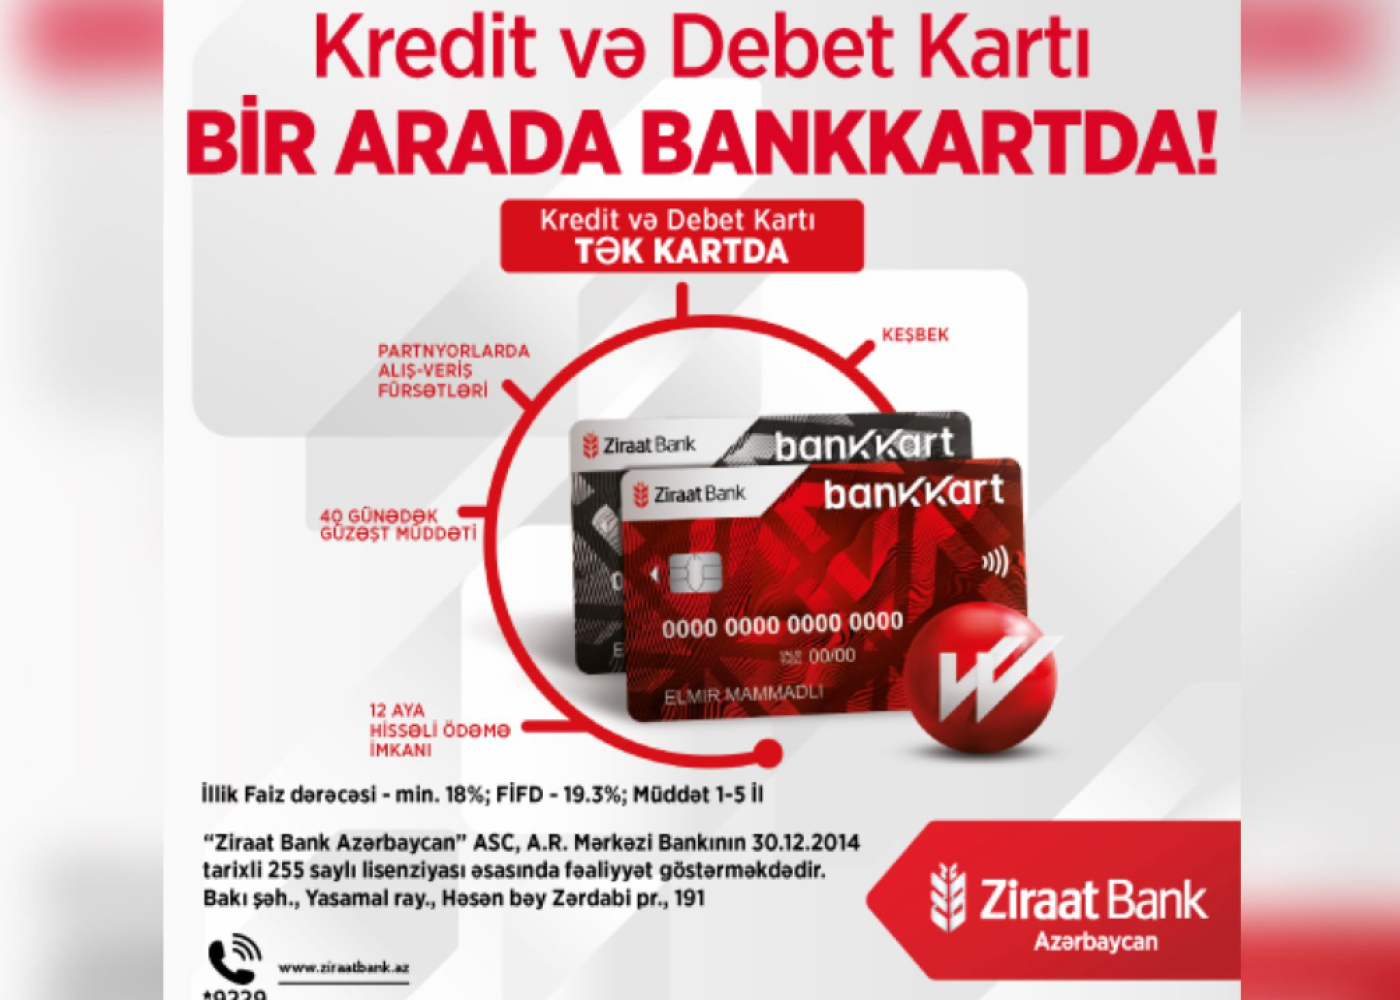 "Ziraat Bank Azərbaycan" Bankkart ilə kredit və debet kartlarını tək kartda birləşdirdi! - VİDEO